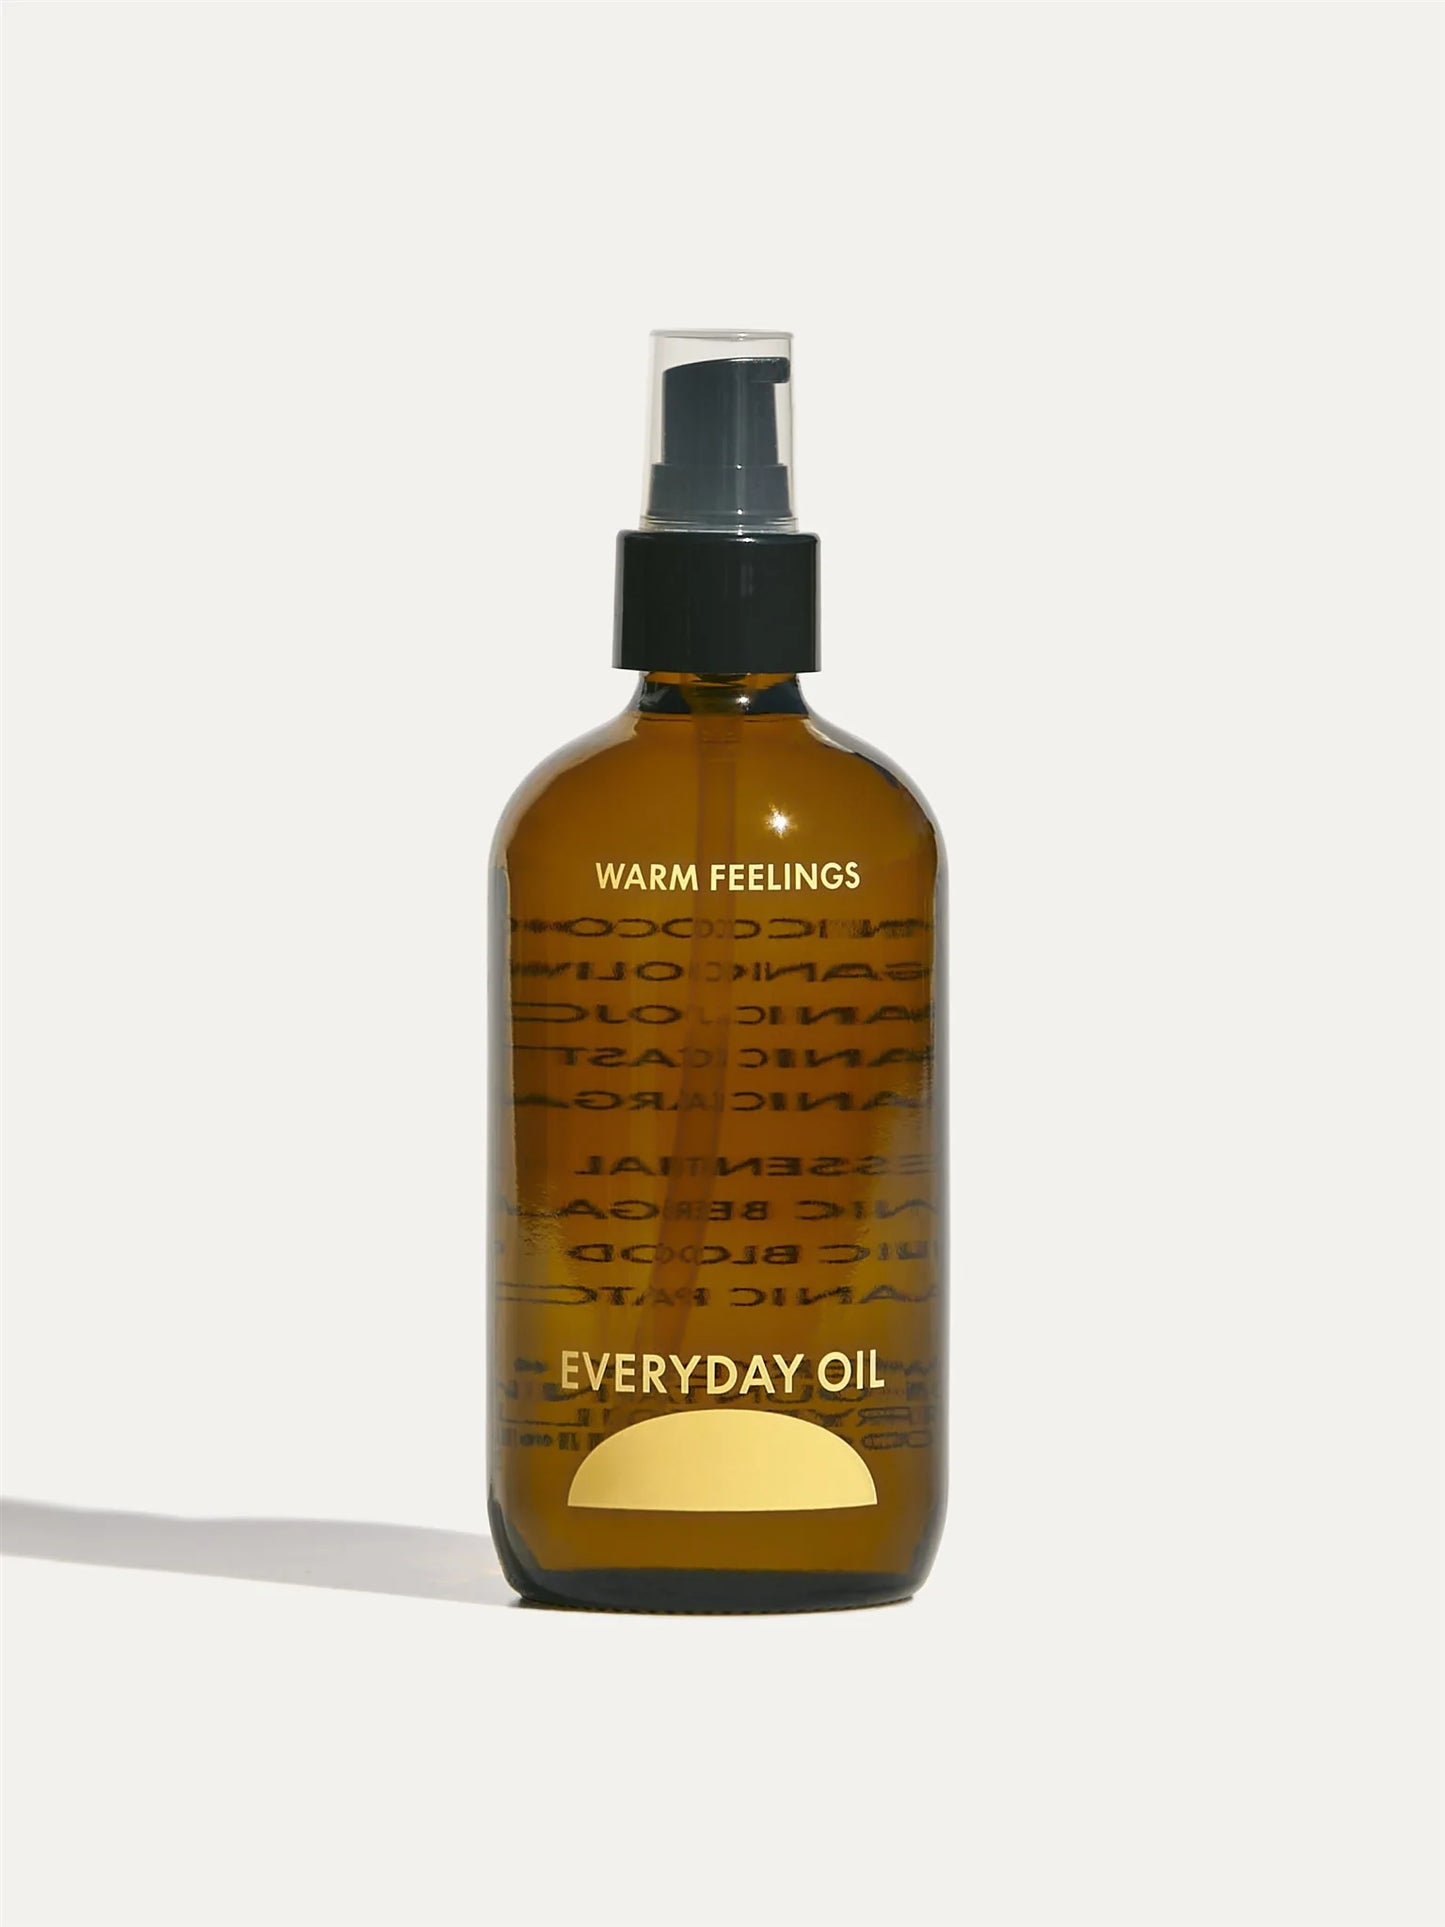 EVERYDAY OIL - Face, Body, + Hair Oil